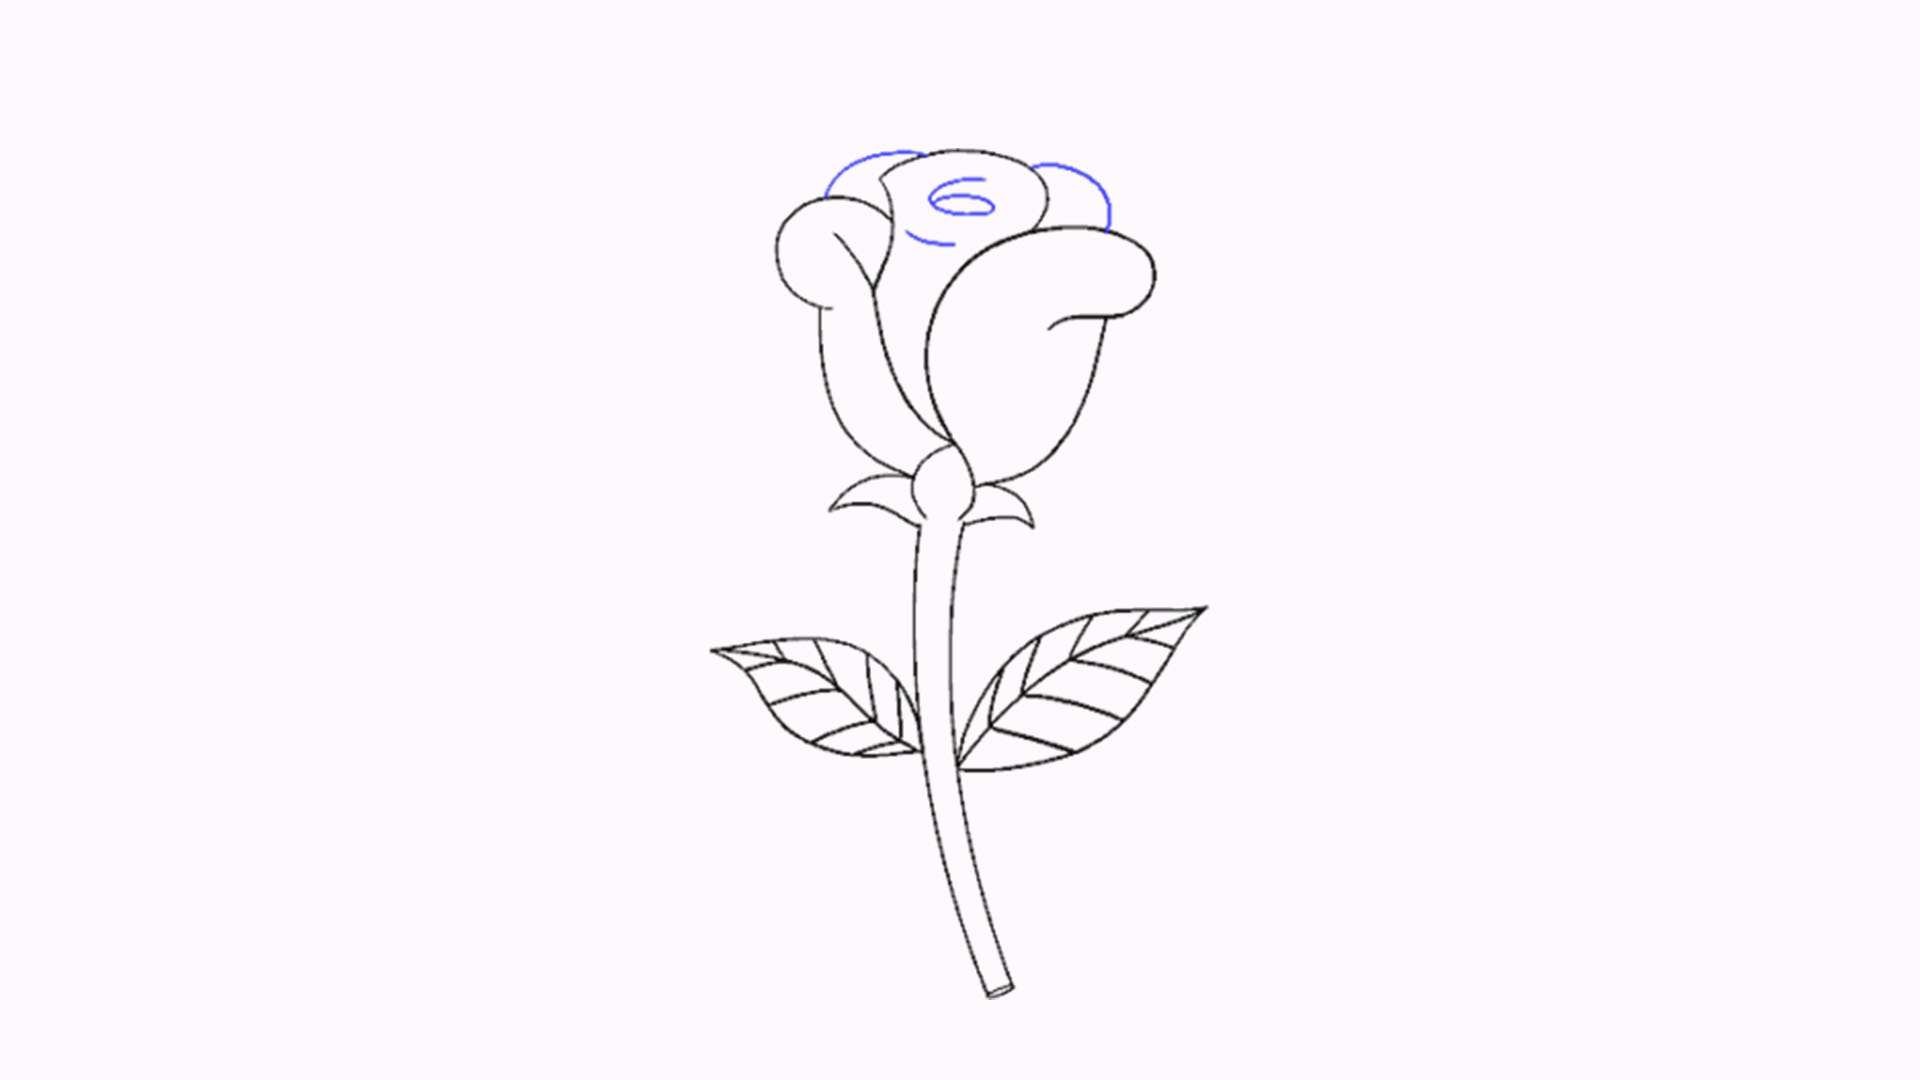 Vẽ hoa 3 cánh là một thú vui tuyệt vời để tận hưởng sự sáng tạo của bạn! Với những nét vẽ phù hợp, bạn có thể tạo ra những hình ảnh đẹp mê hồn. Xem hình liên quan để có ý tưởng và cách vẽ hoa 3 cánh độc đáo nhất.